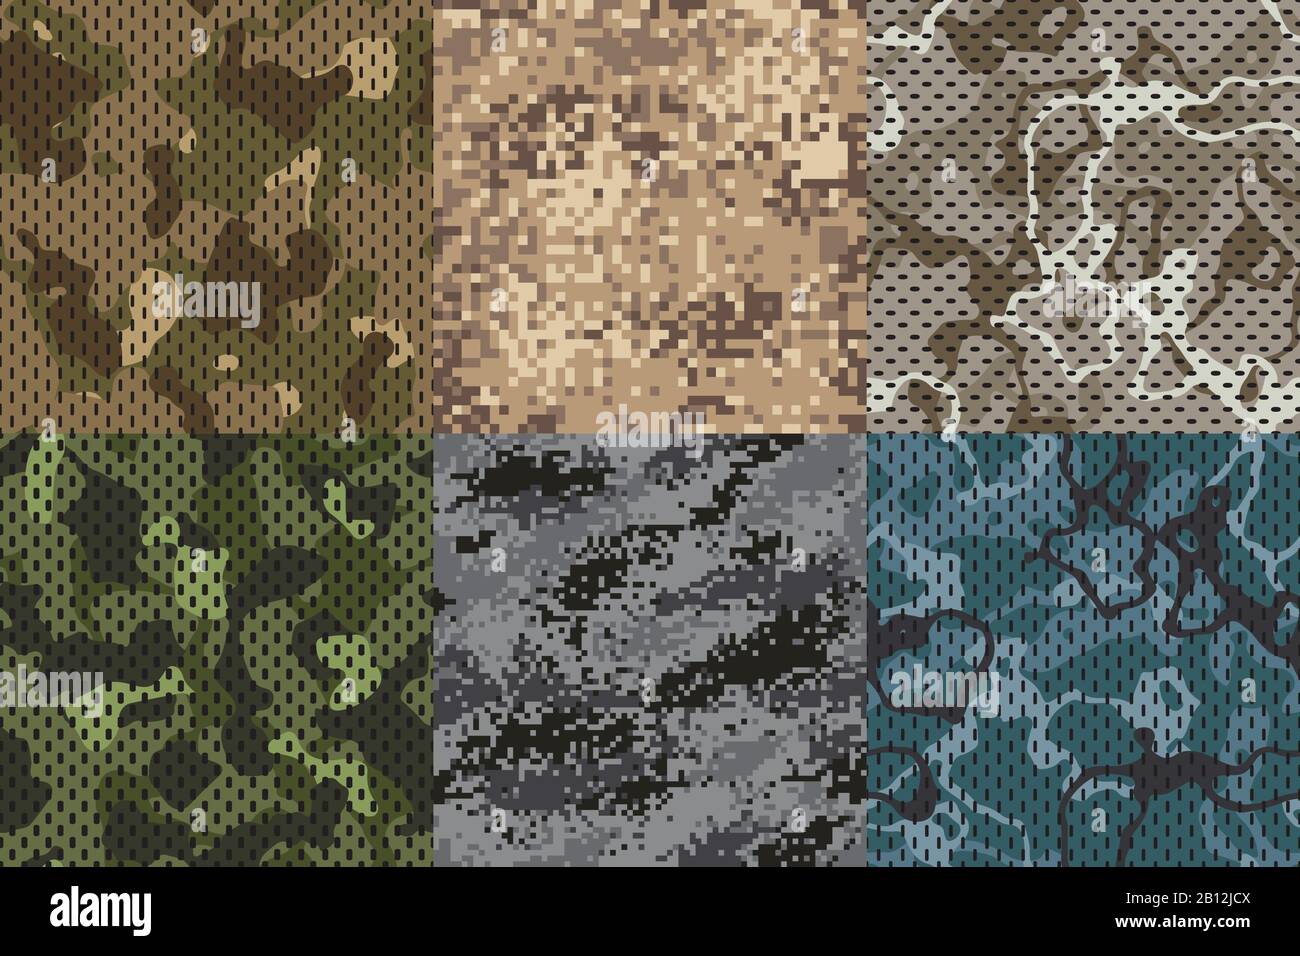 Khakifarbene Textur tarnen. Army Fabric nahtlose Struktur und Sand Camo Netzmuster Vektor-Texturen gesetzt Stock Vektor